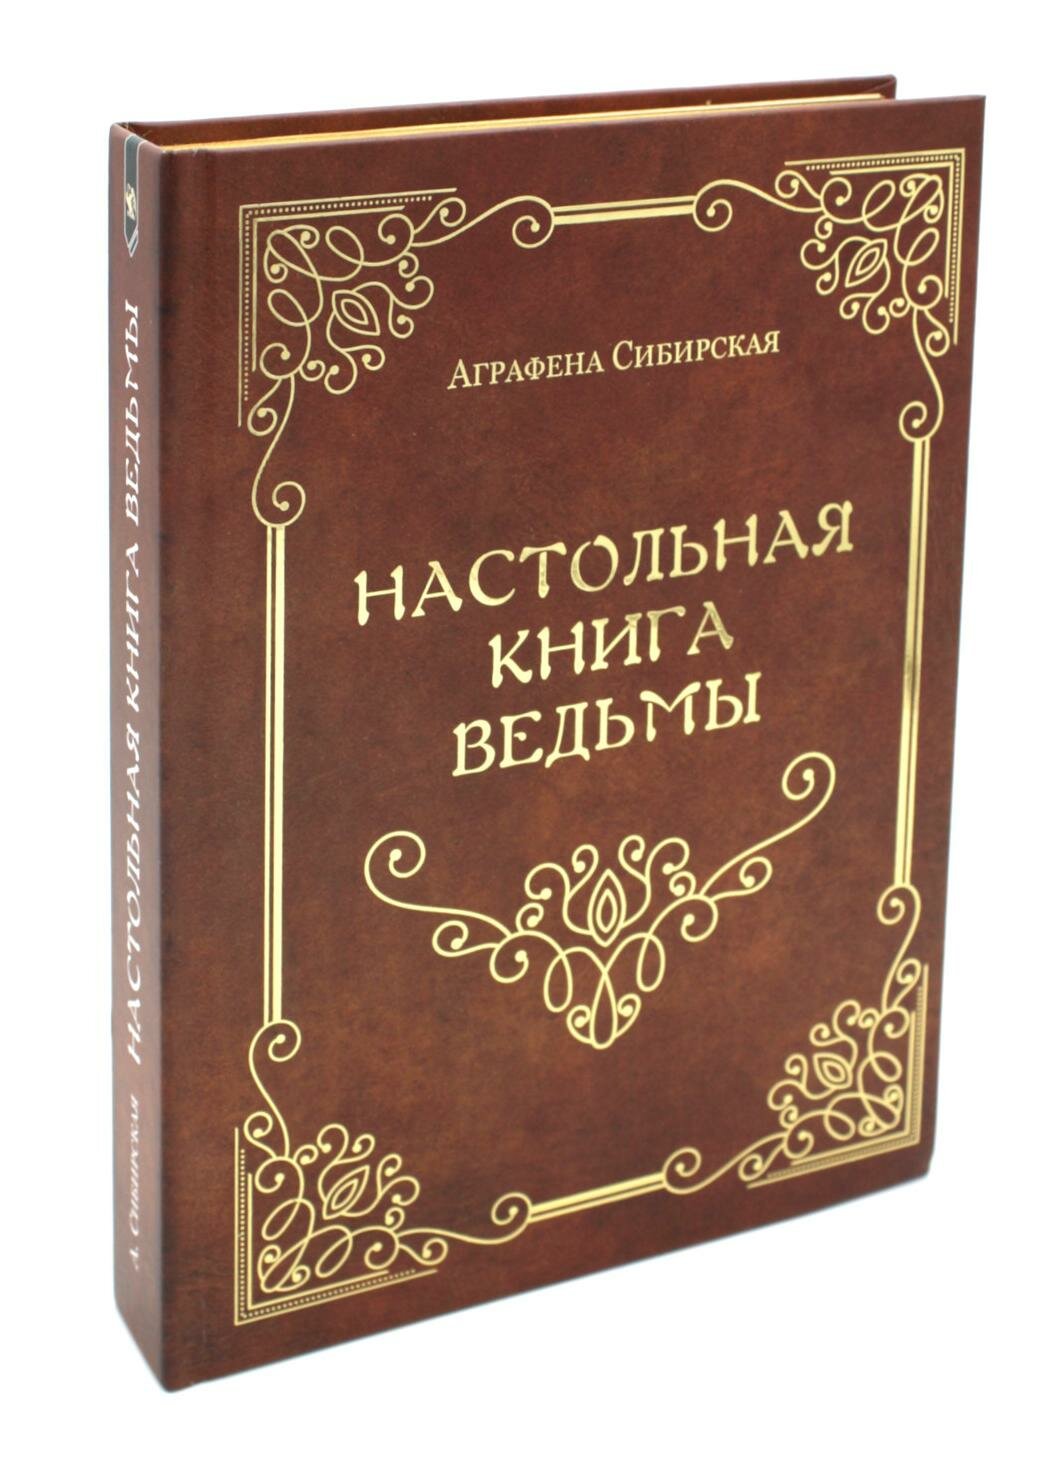 Настольная книга ведьмы (Сибирская Аграфена) - фото №2